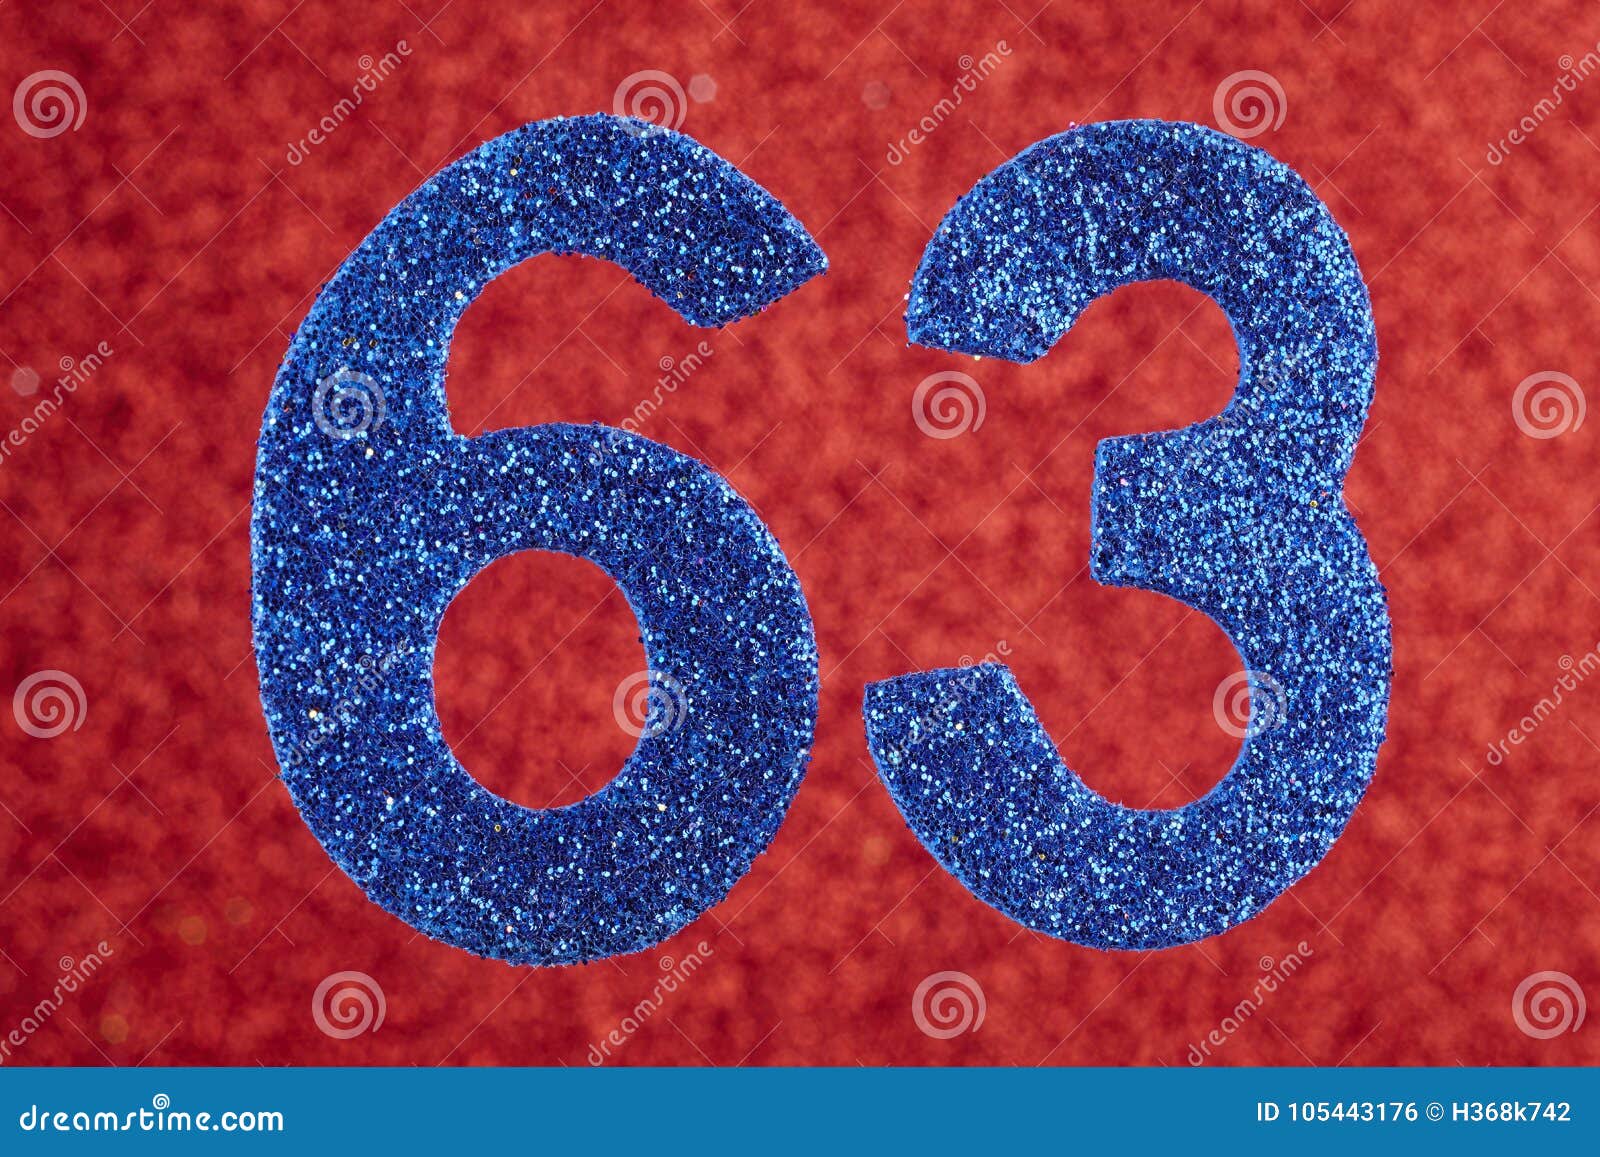 3 шестьдесят пять. Цифра 63. Цветочные синие цифры. 63 Шестьдесят три. Синяя цифра 8 в цветочек.